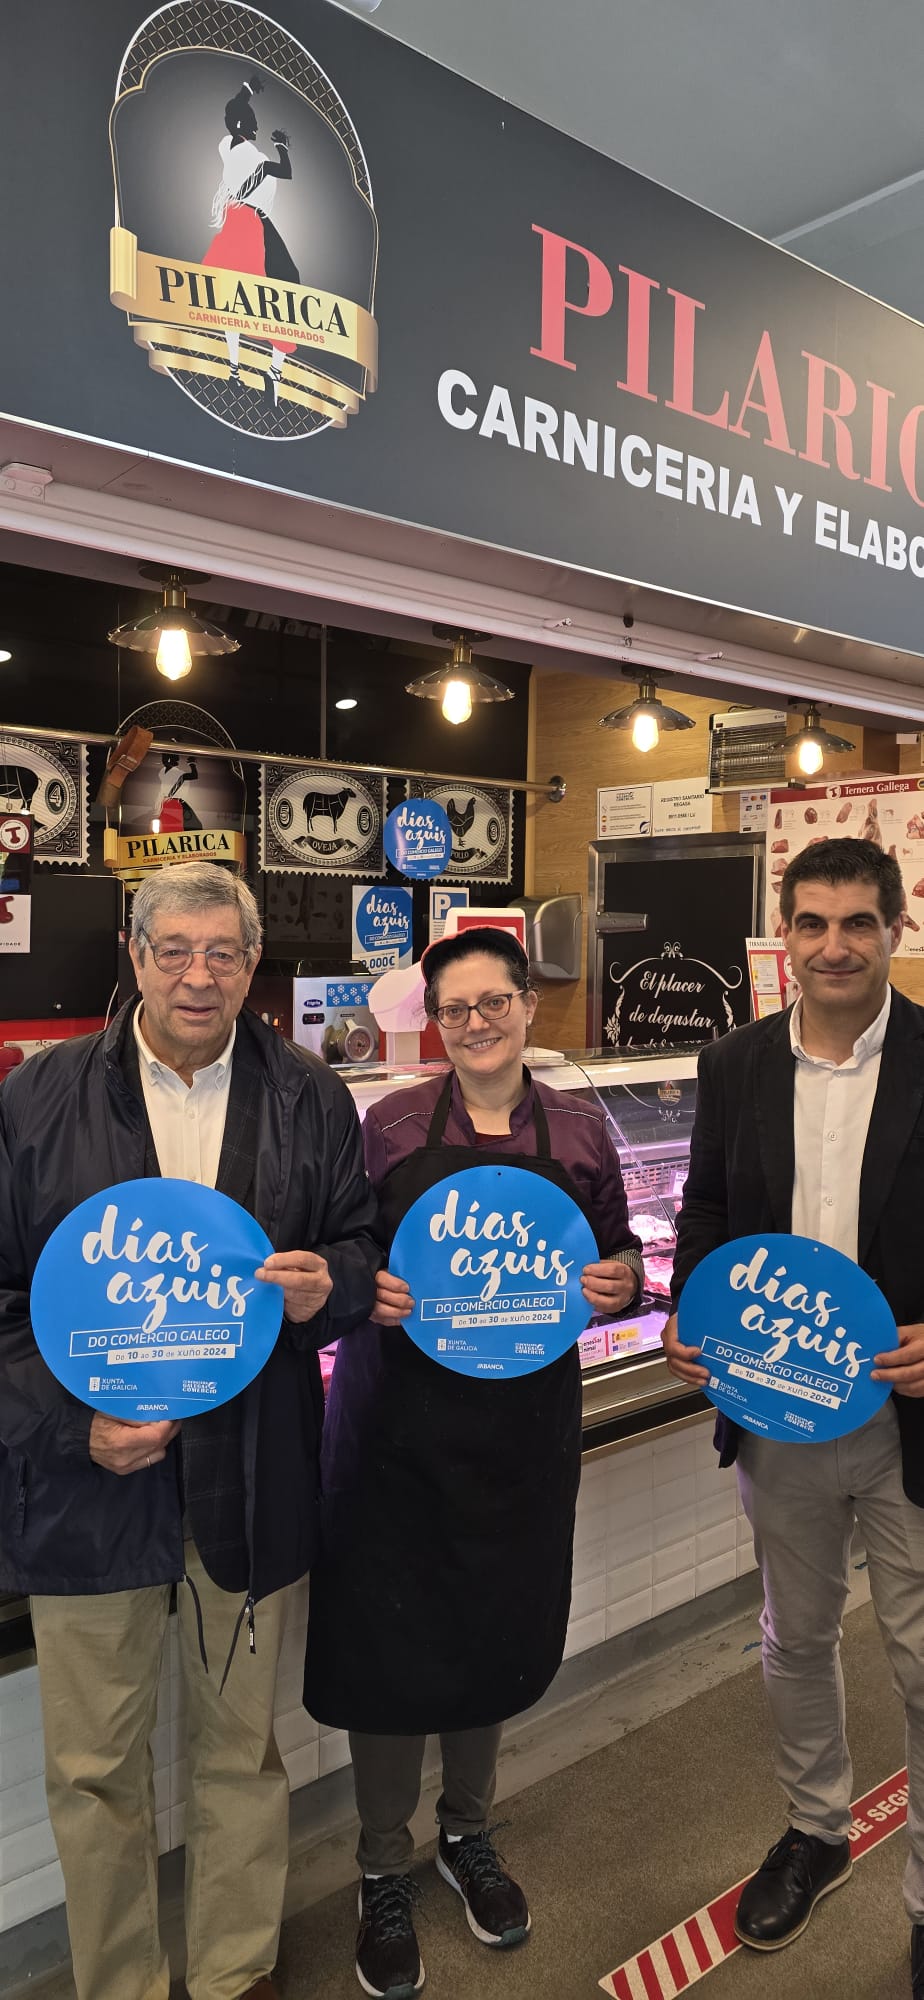 Image 1 of article A Xunta pon en valor en Lugo a campaña 'Días azuis' de impulso ao comercio local de Galicia e coa que se promove a remuda xeracional